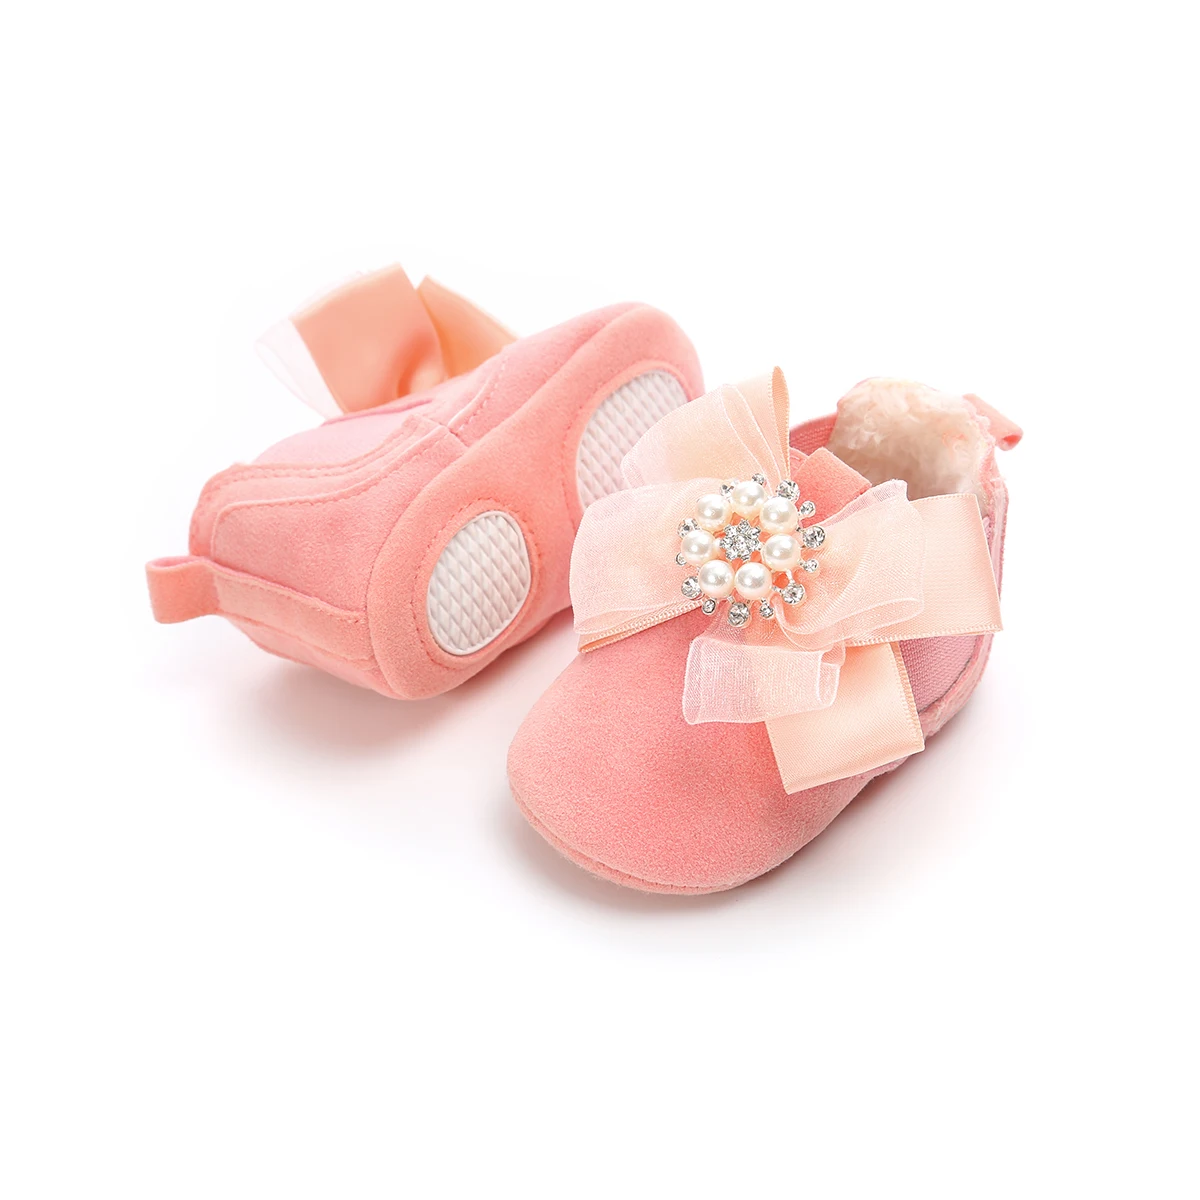 Emmababy детская обувь для новорожденных девочек Леопардовый бант мягкая подошва принцесса обувь для ползунков 0-18 м - Цвет: Розовый